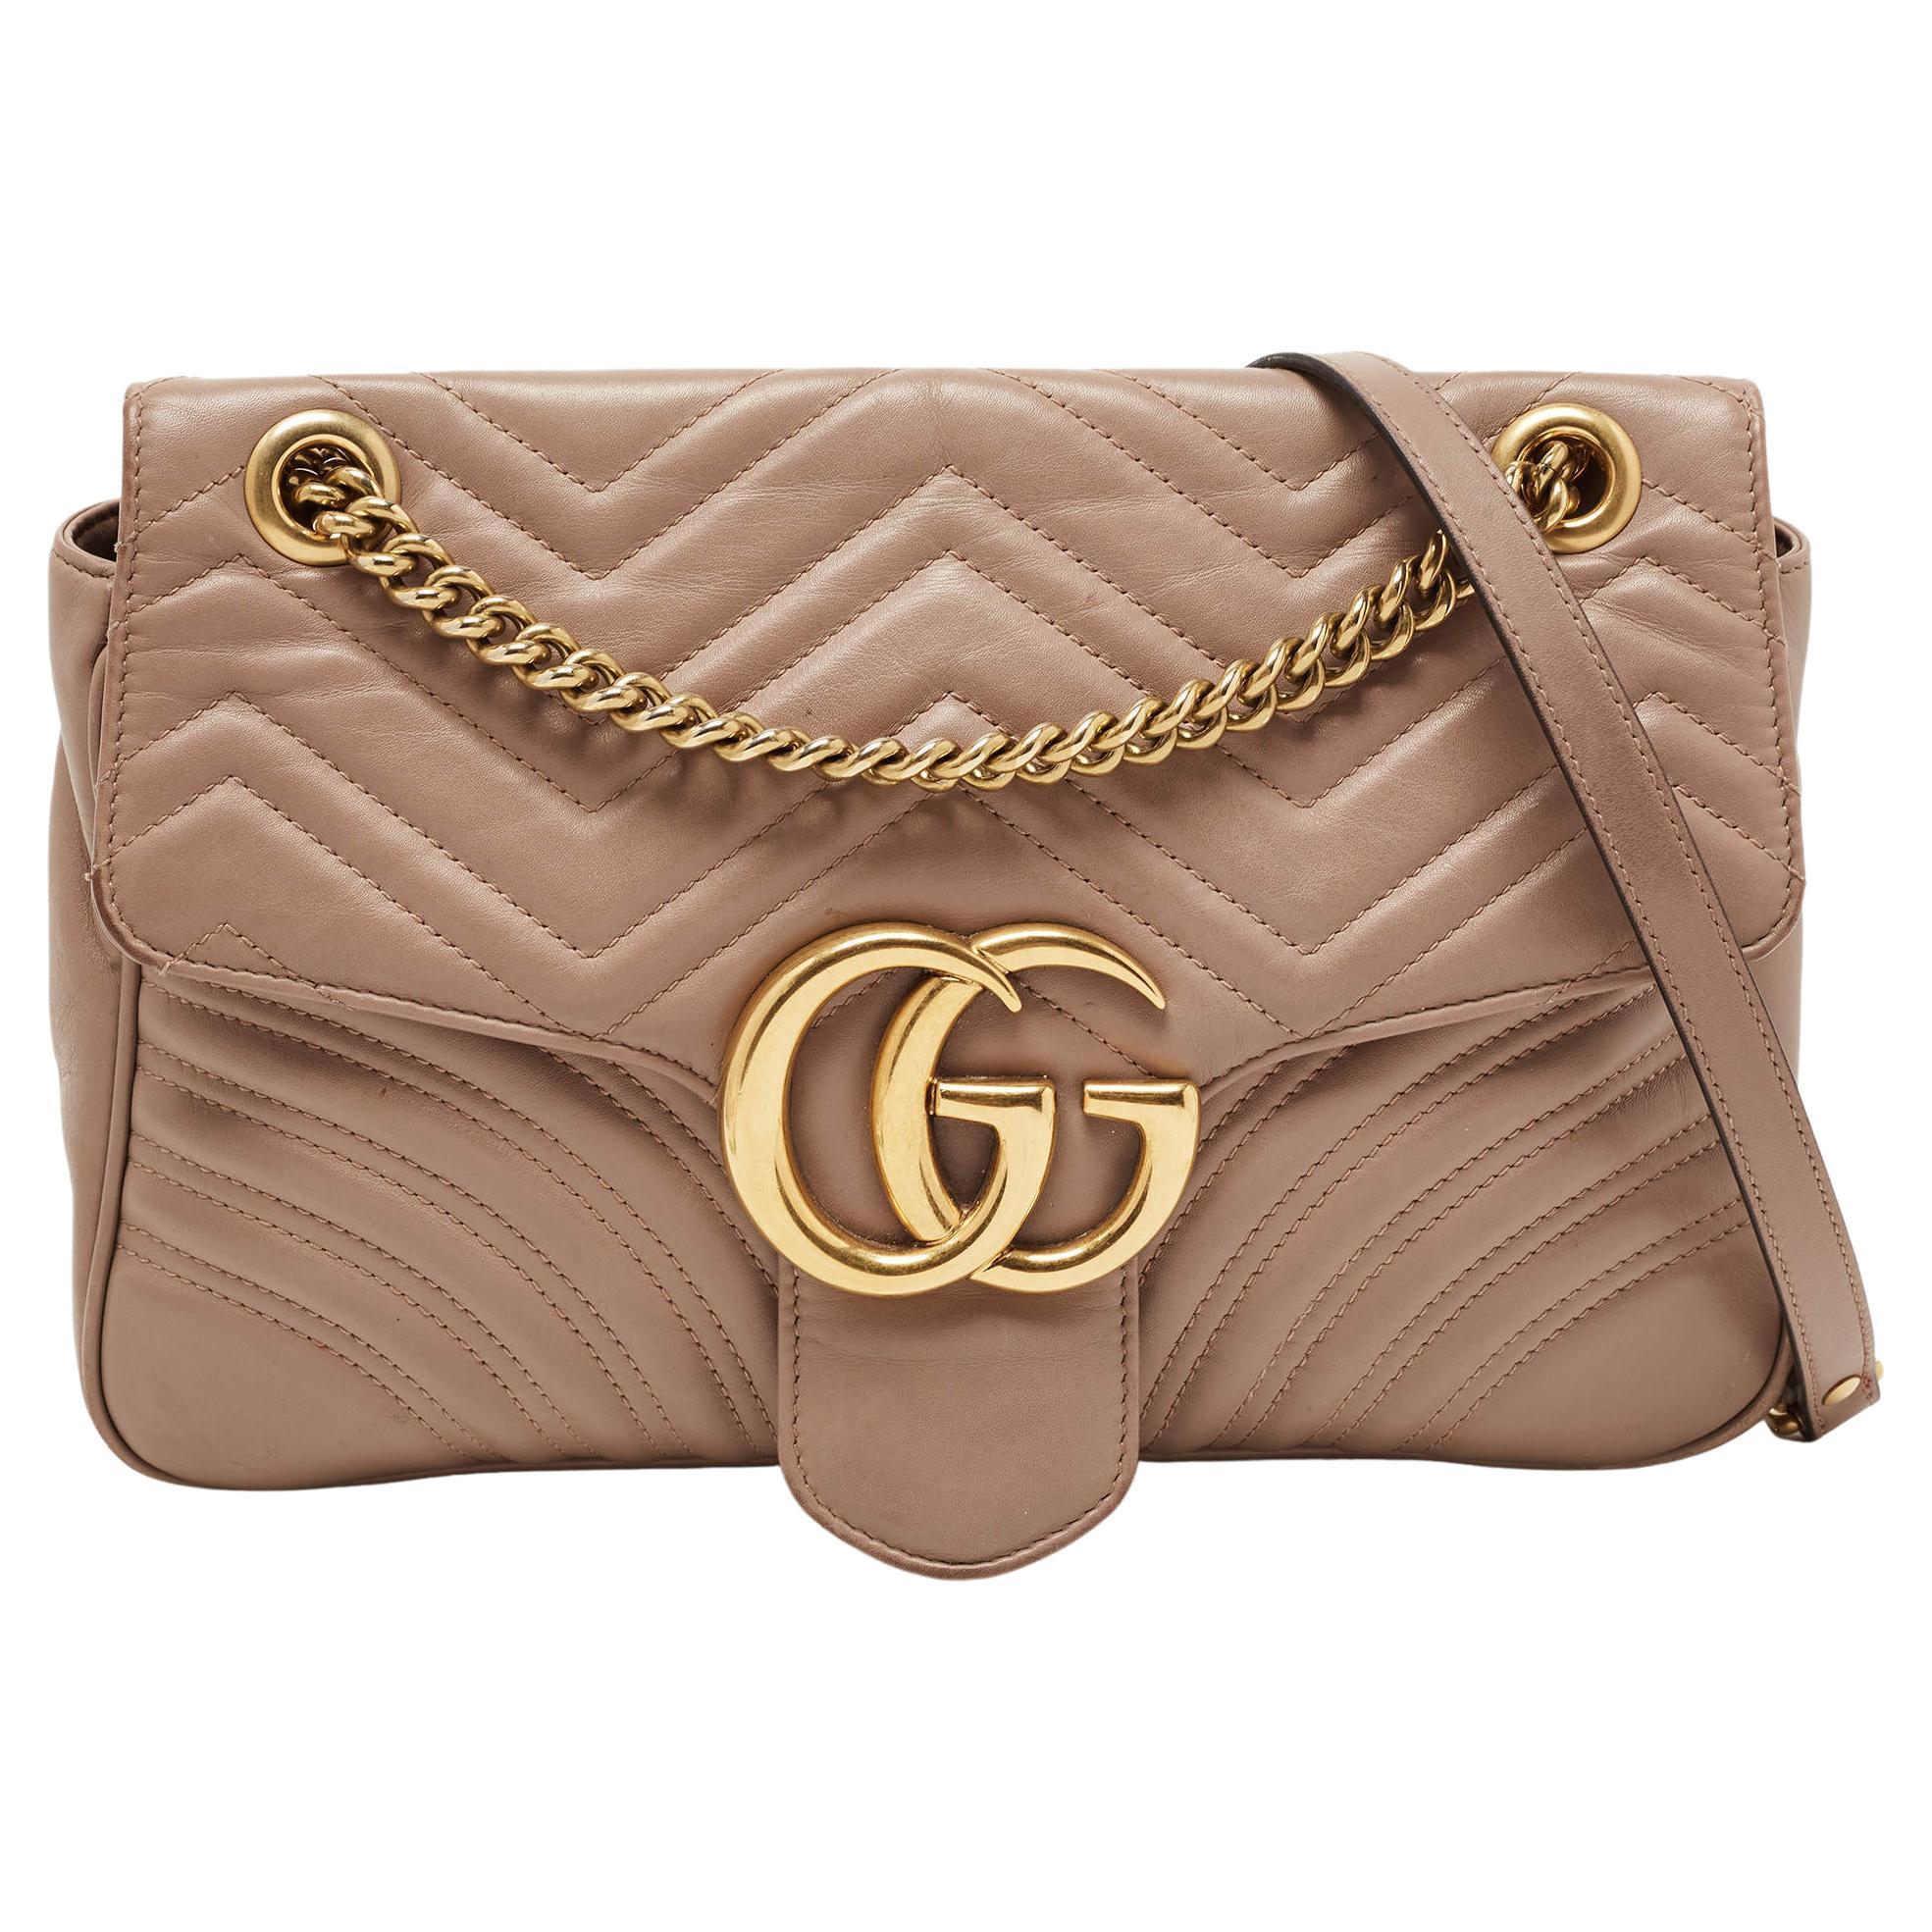 Gucci Beige Matelassé Leather Medium GG Marmont Shoulder Bag